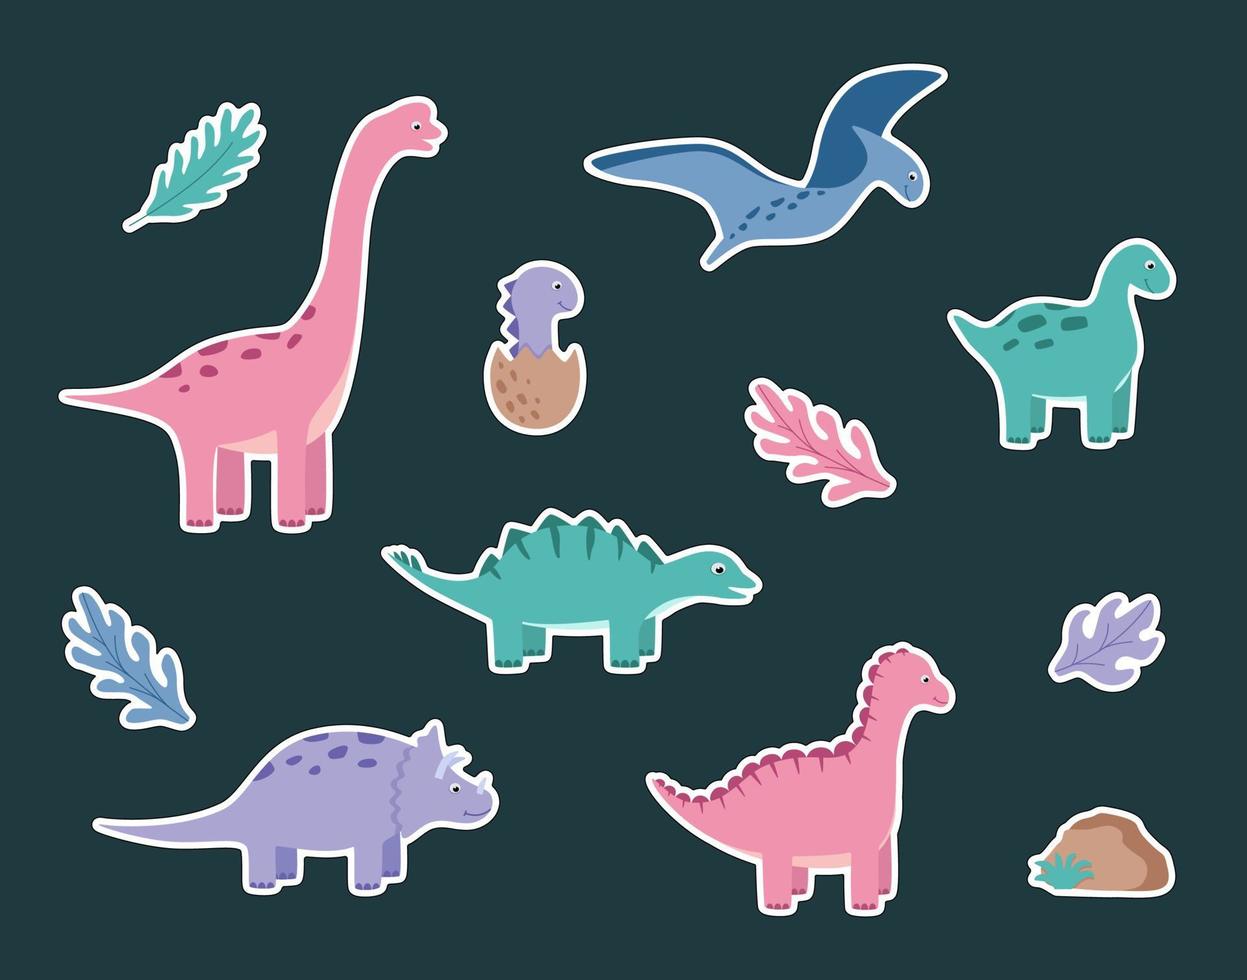 ensemble de dessin animé d'autocollants drôles de dinosaures. illustration vectorielle de personnages de dinosaures mignons. vecteur